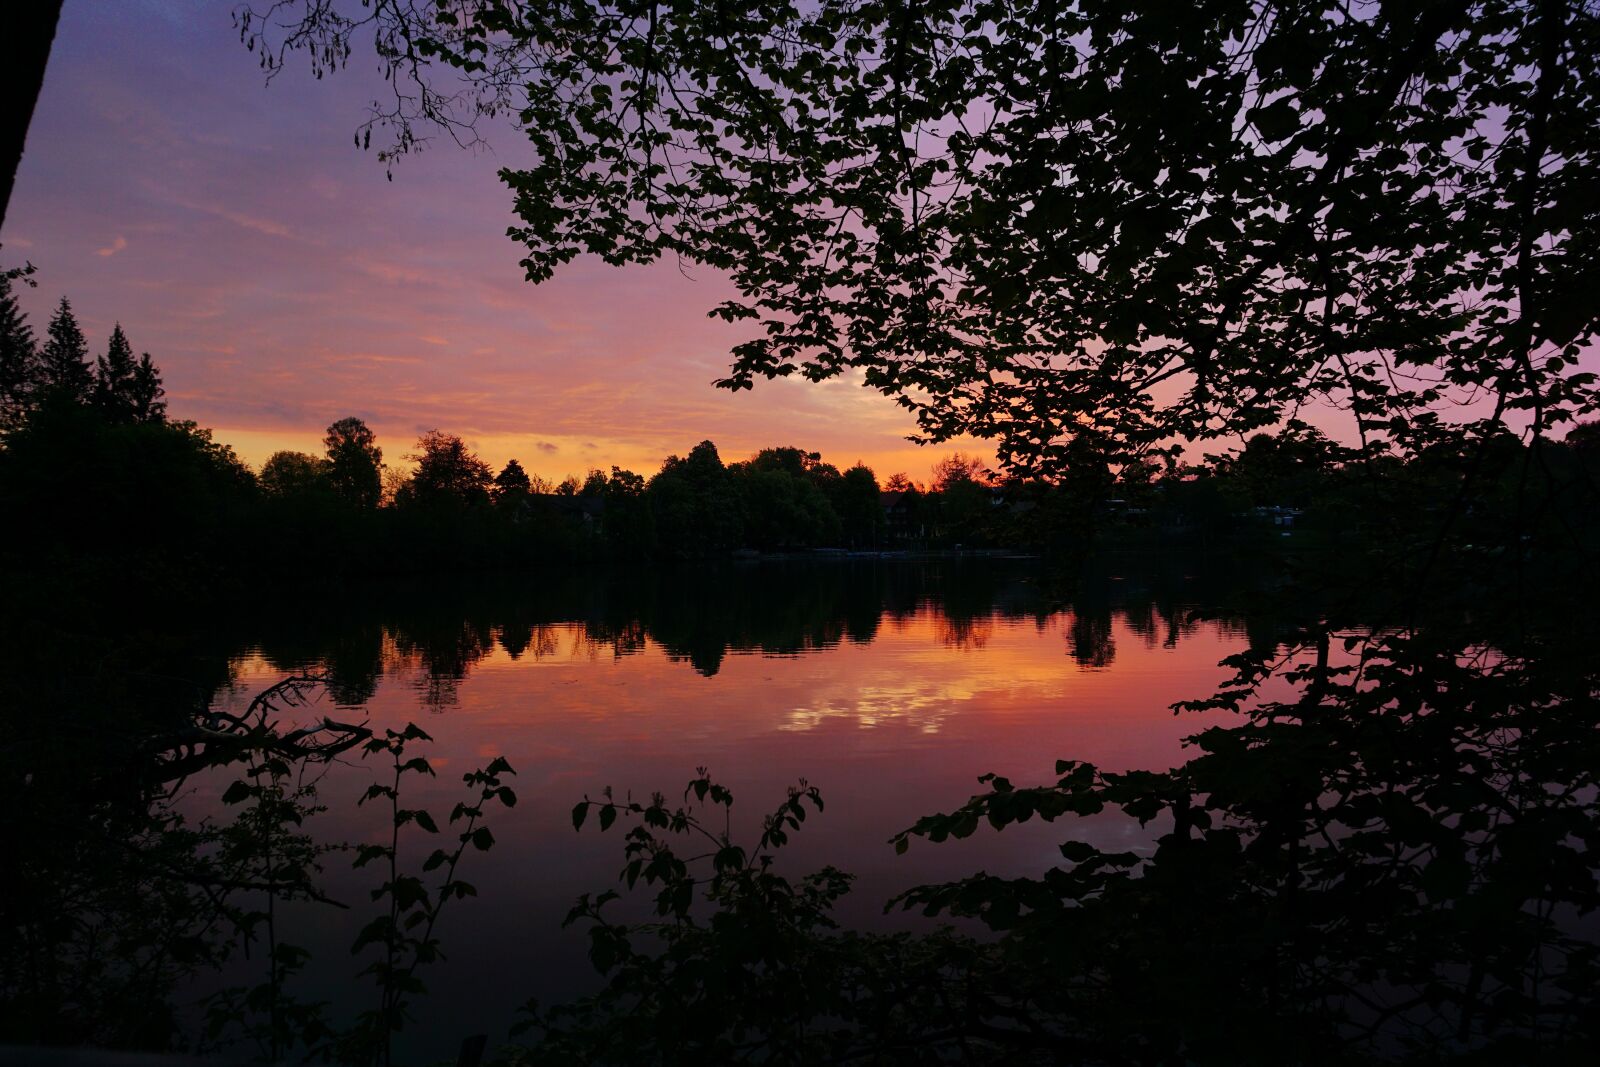 Sony a6000 sample photo. Sunrise, lake, landscape photography